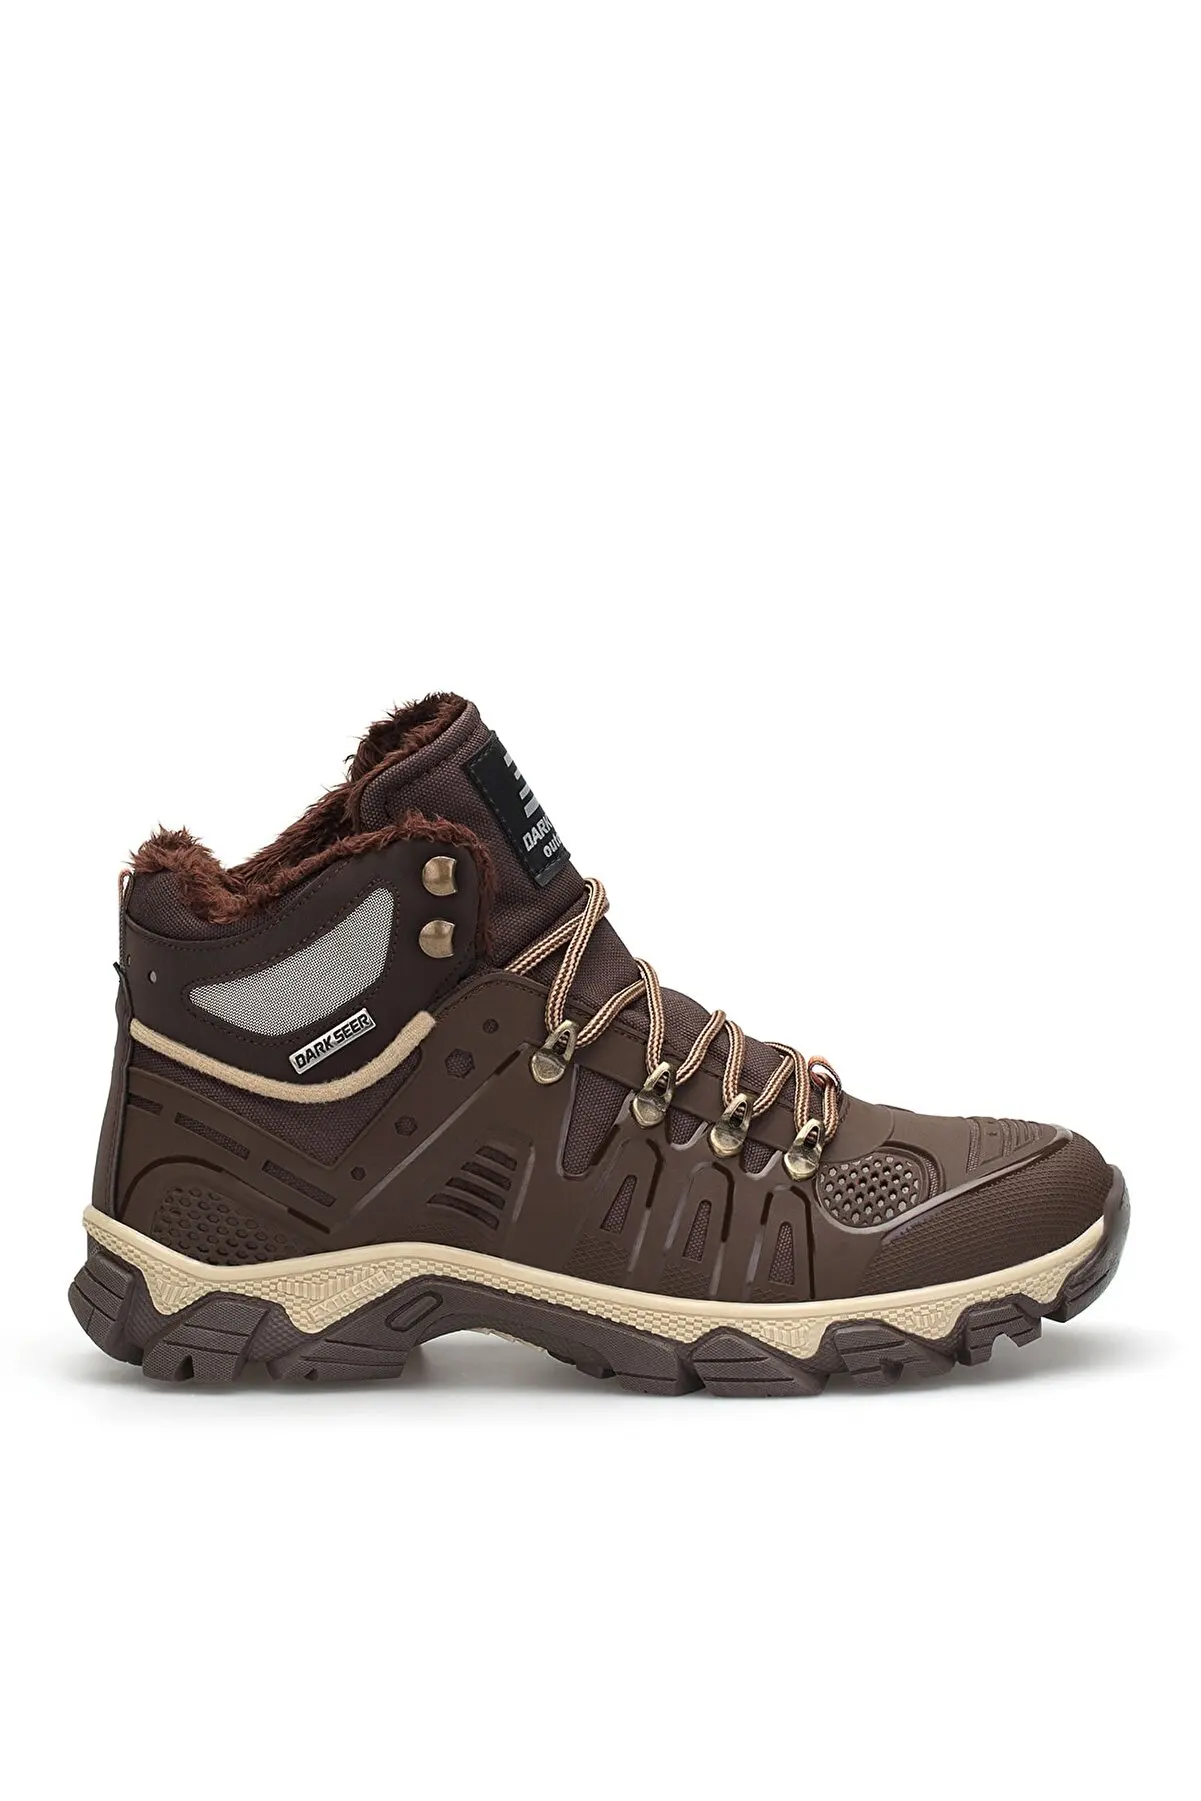 Men Outdoor Walking Shoes, 2022 Men Sport Climbing Sneakers, Brown Men's Outdoor Trekking Boots, New Hot Style Men Hiking Shoes